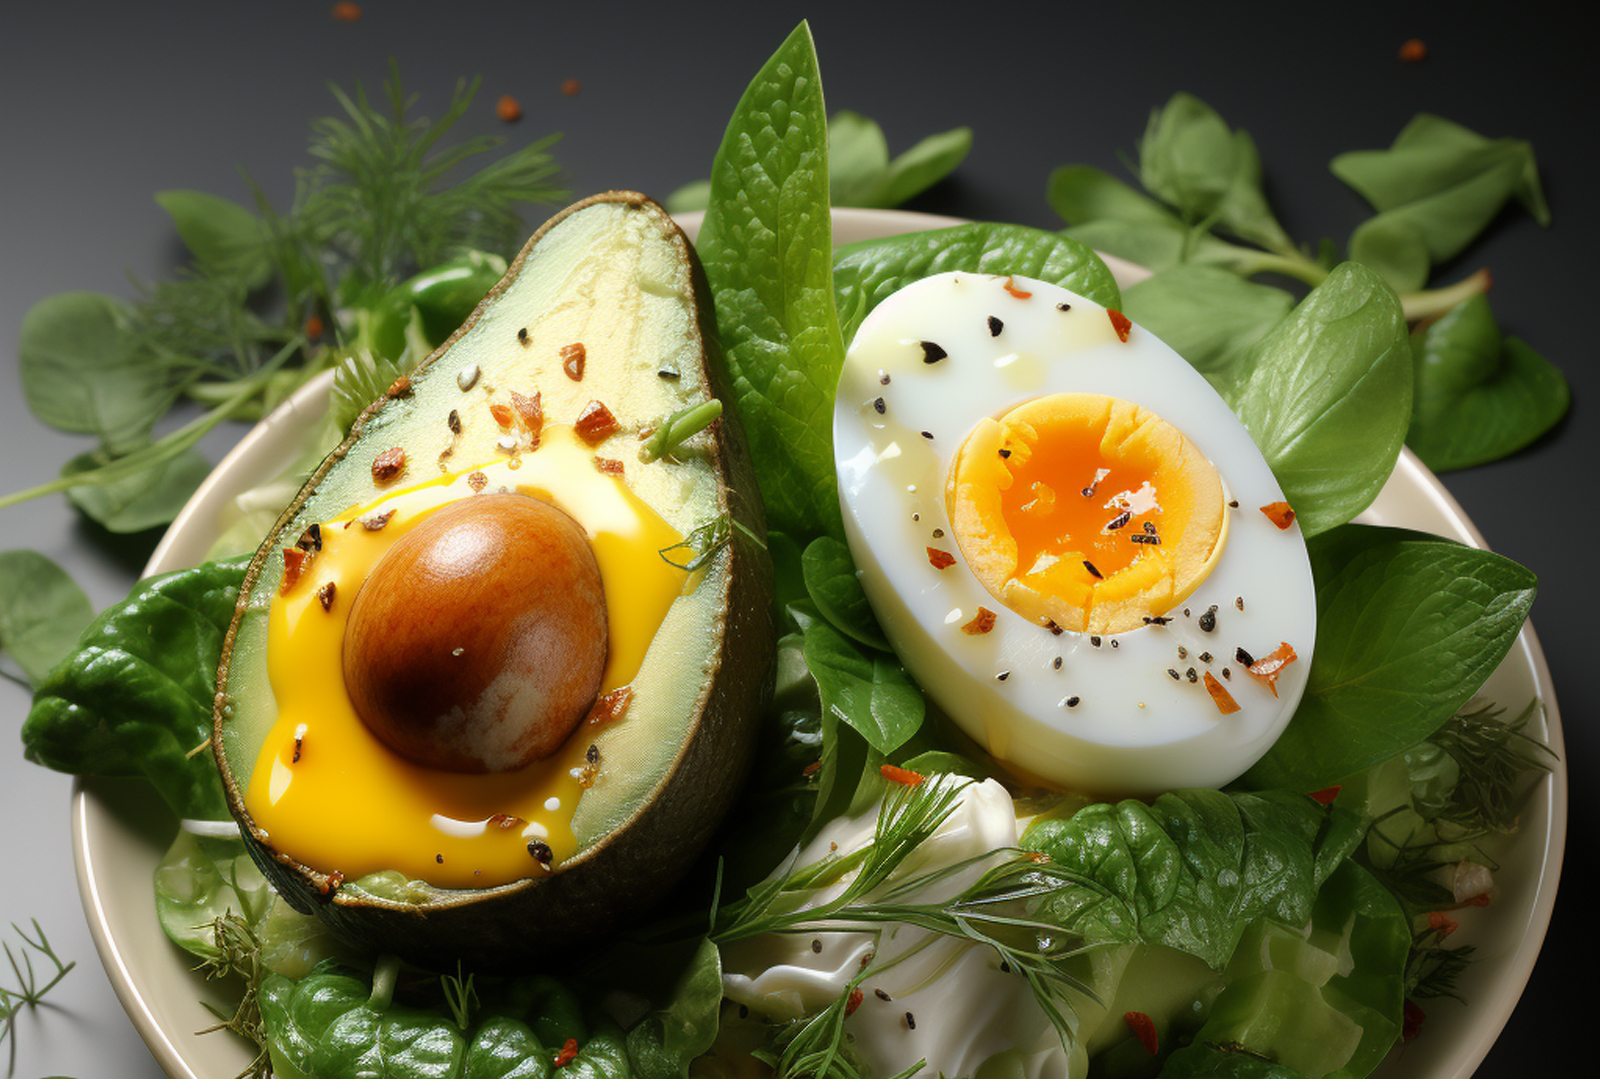 Avocado & egg salad